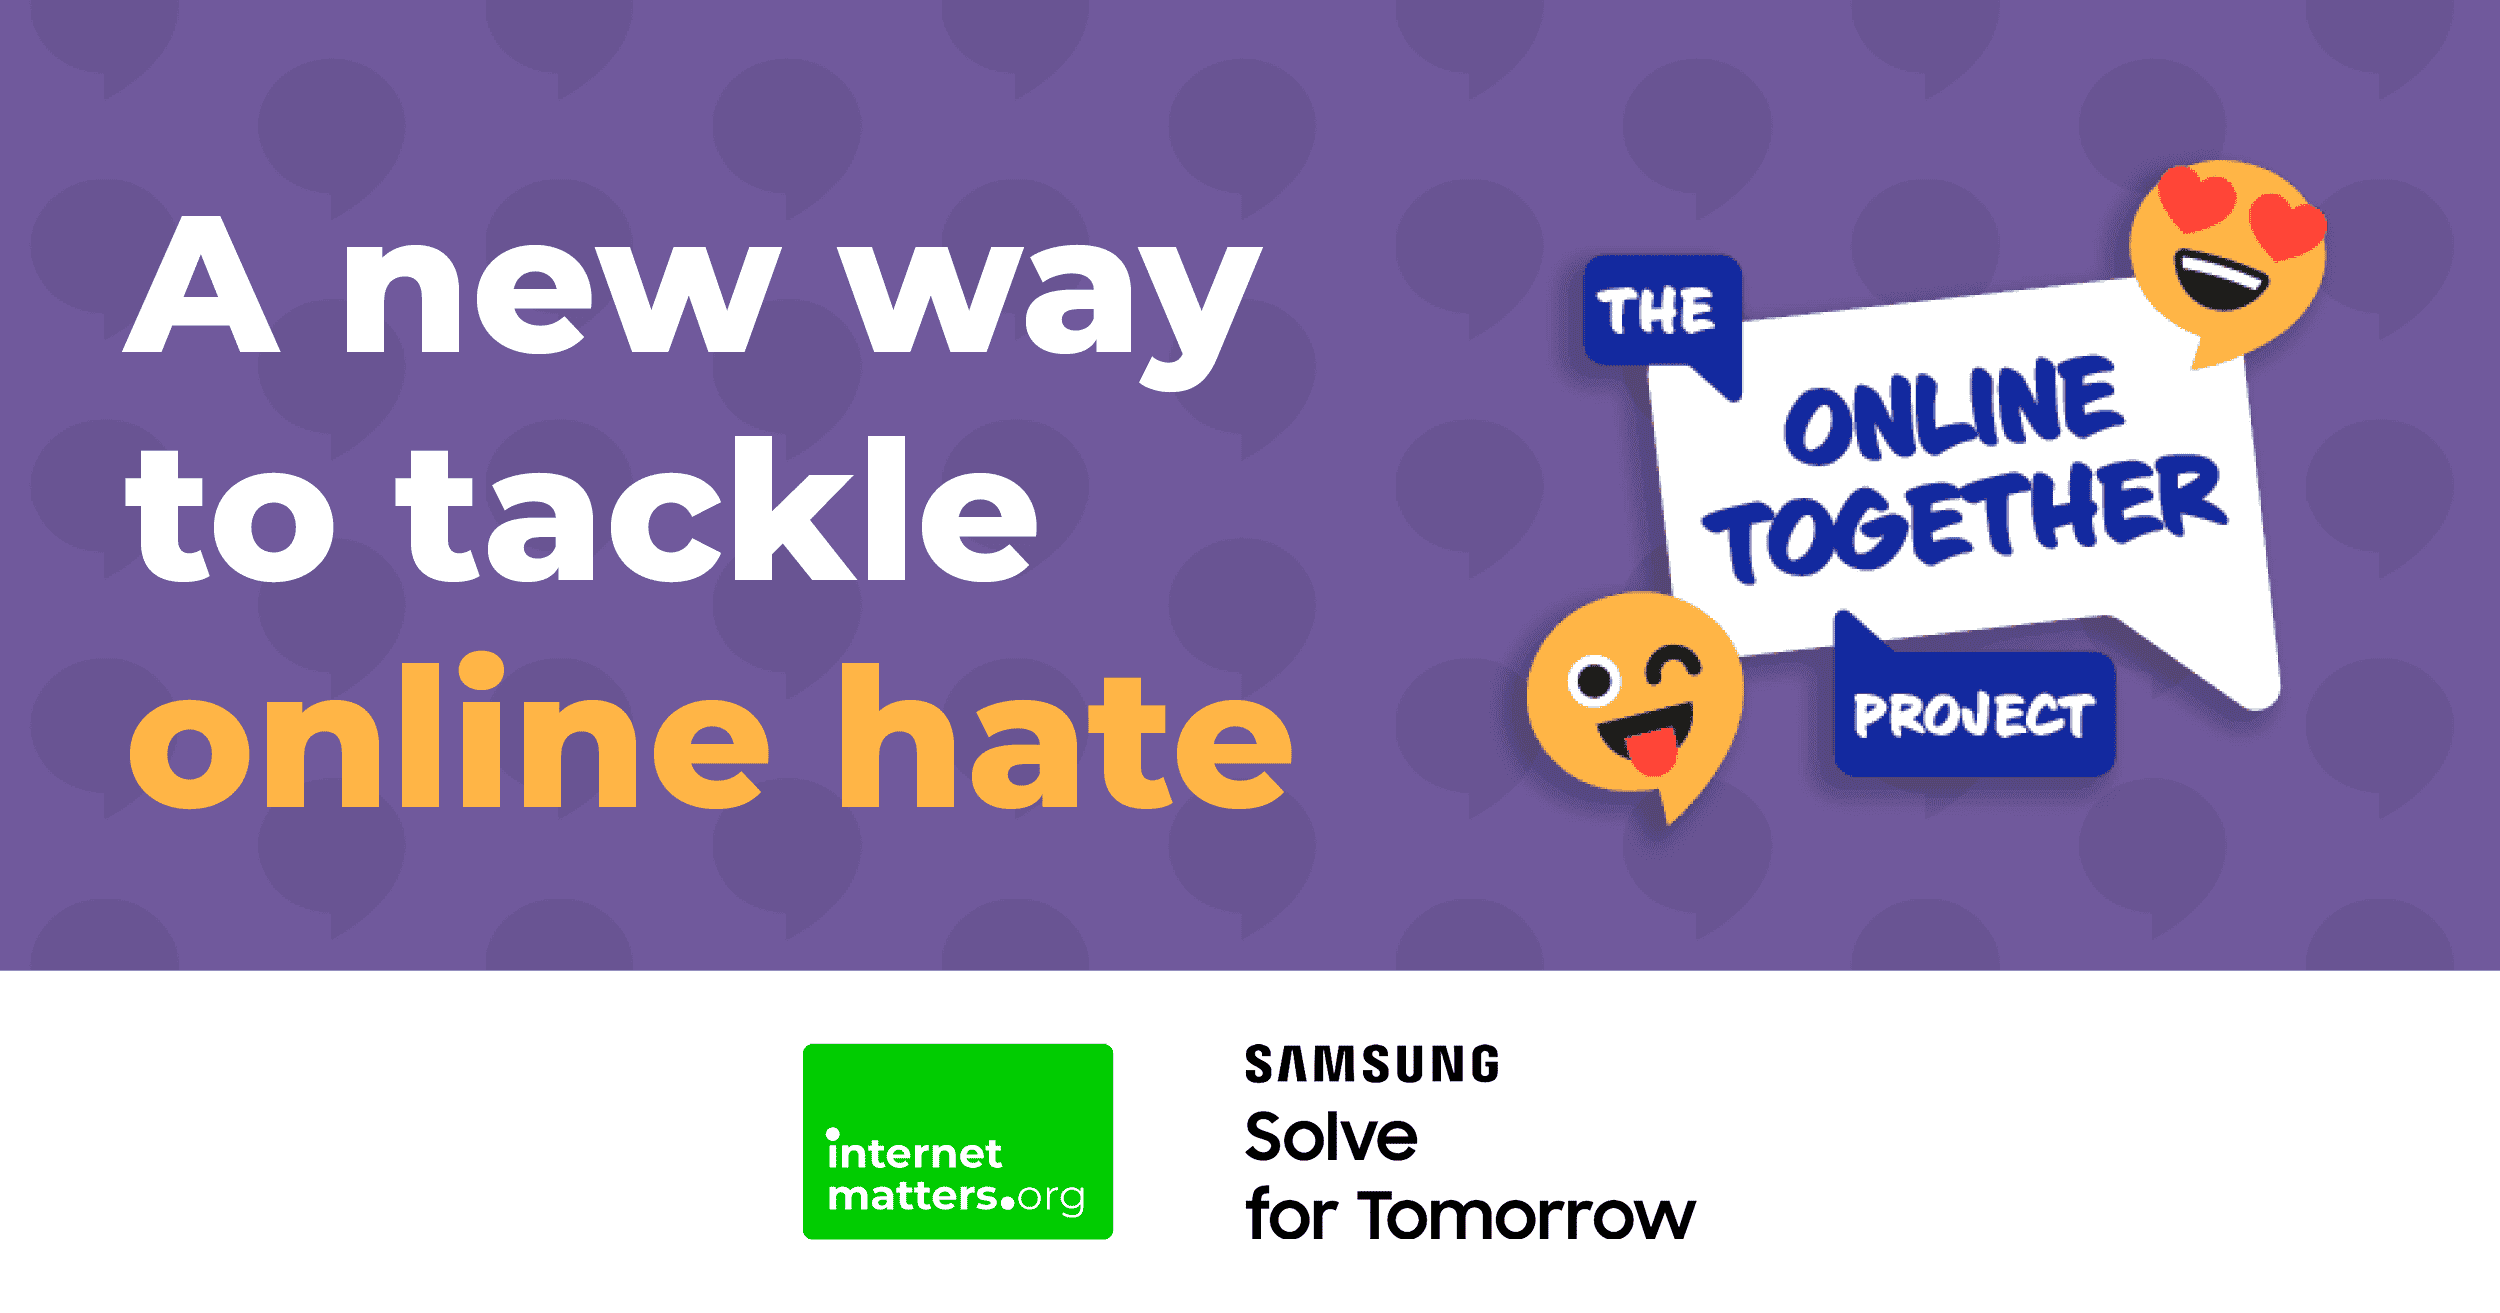 "Un nuovo modo per affrontare l'odio online" con il logo di The Online Together Project.